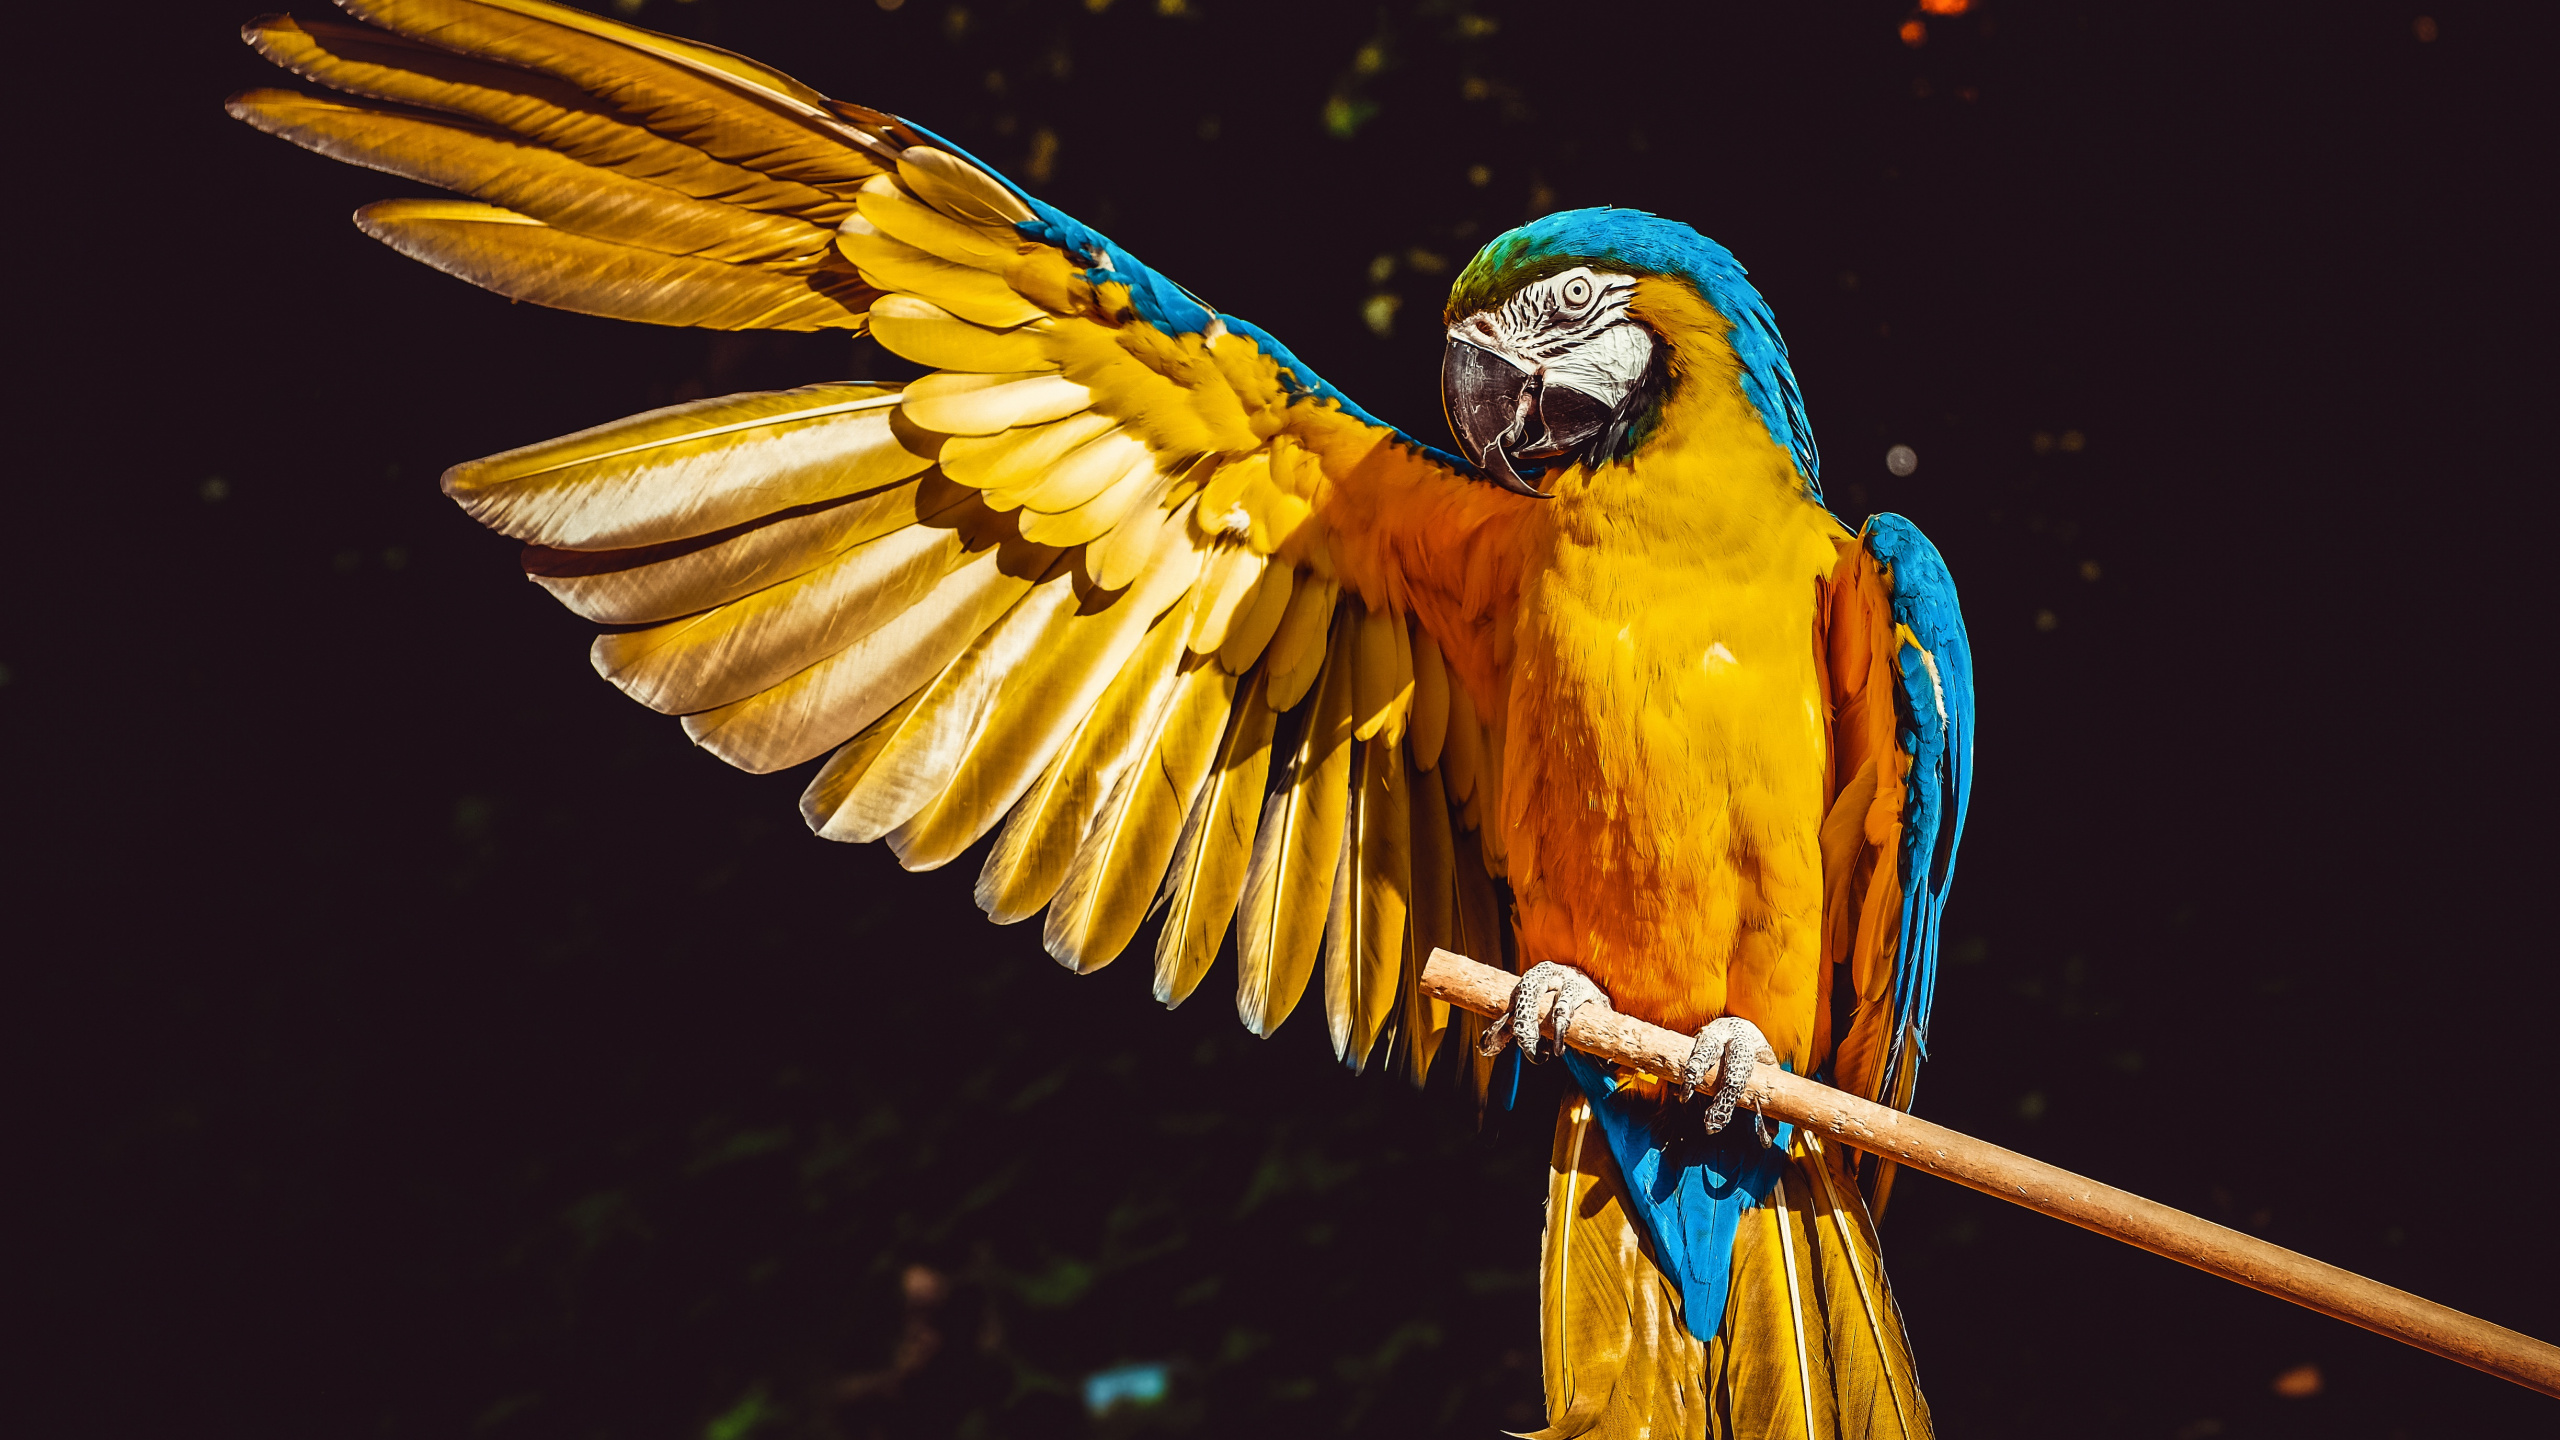 金刚鹦鹉, 鸟, 黄色的, 翼, 羽毛 壁纸 2560x1440 允许